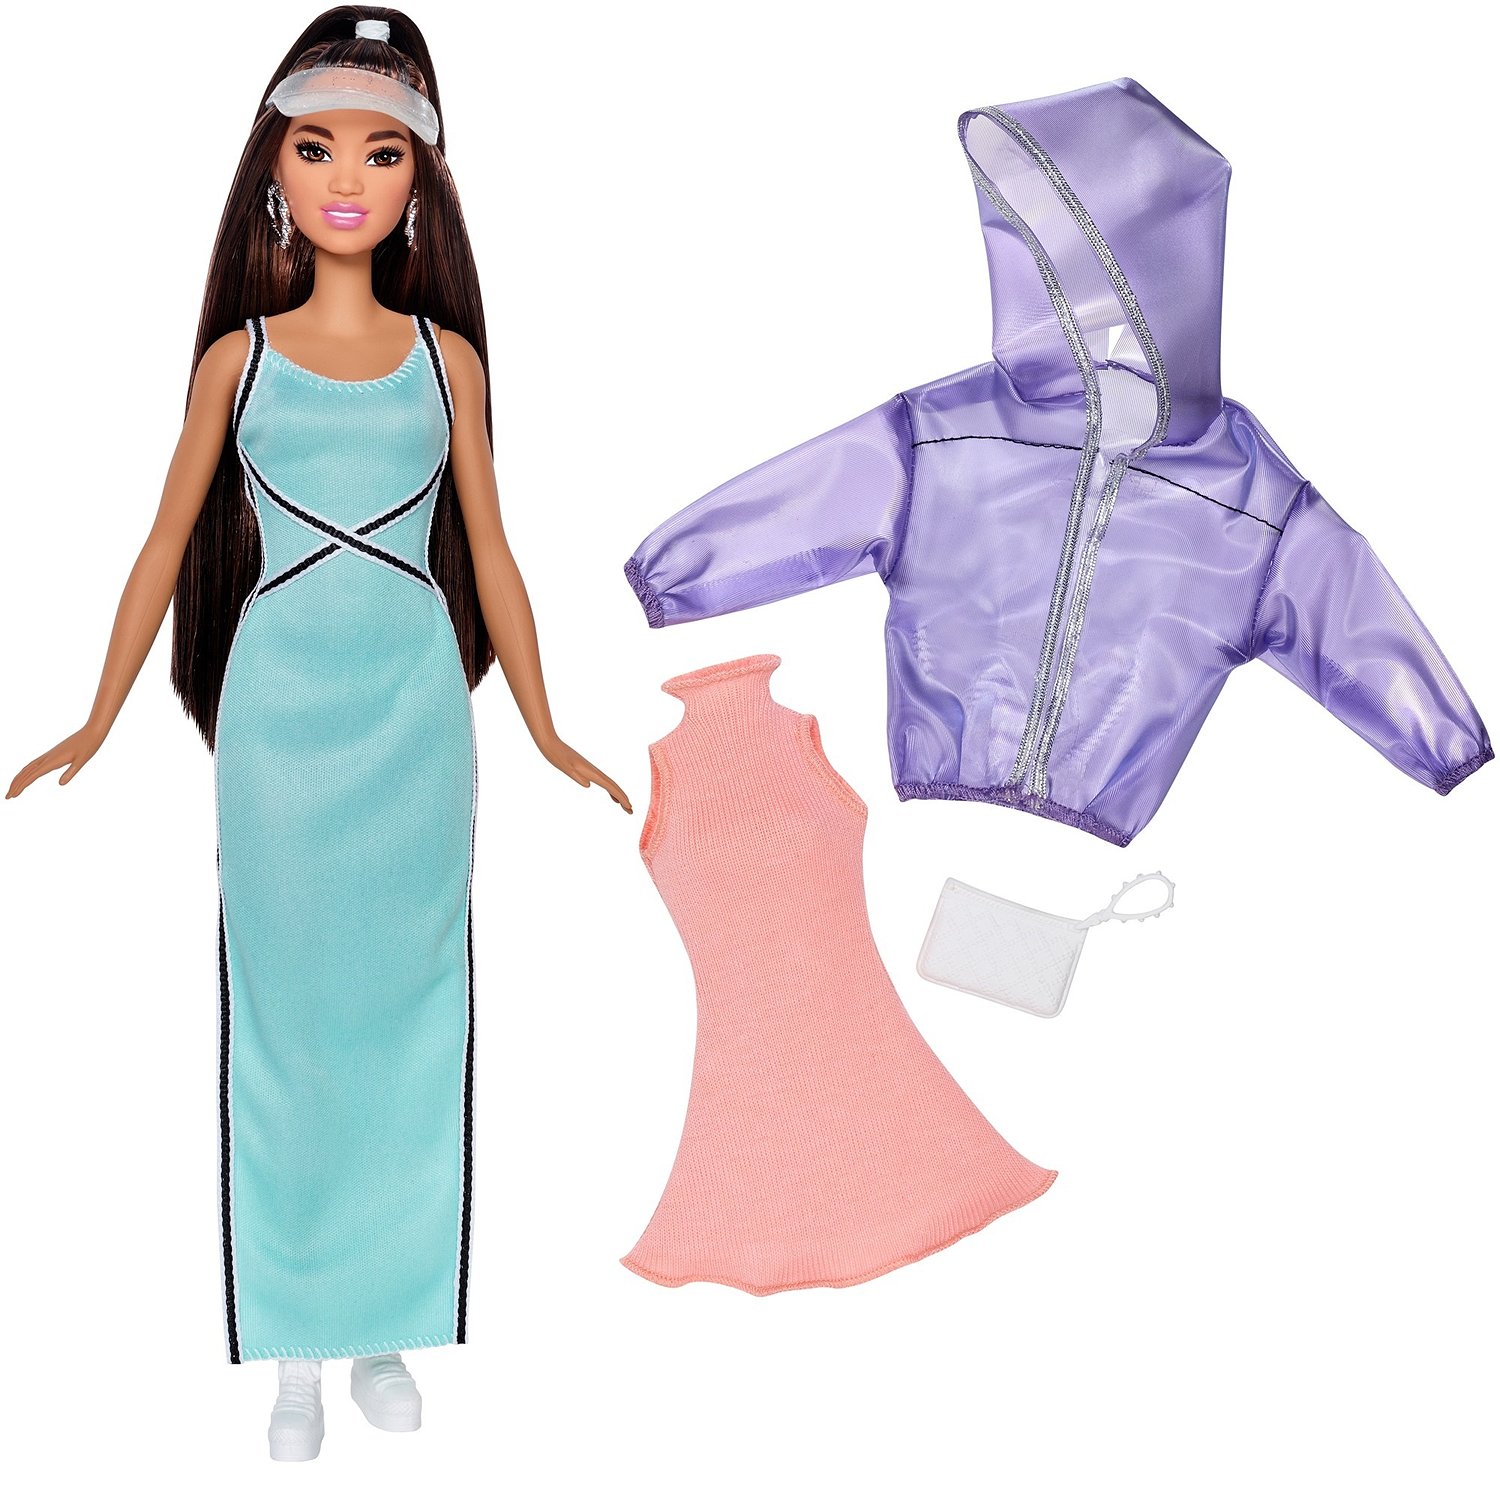 Кукла Barbie FJF71 с дополнительным комплектом одежды, 29 см